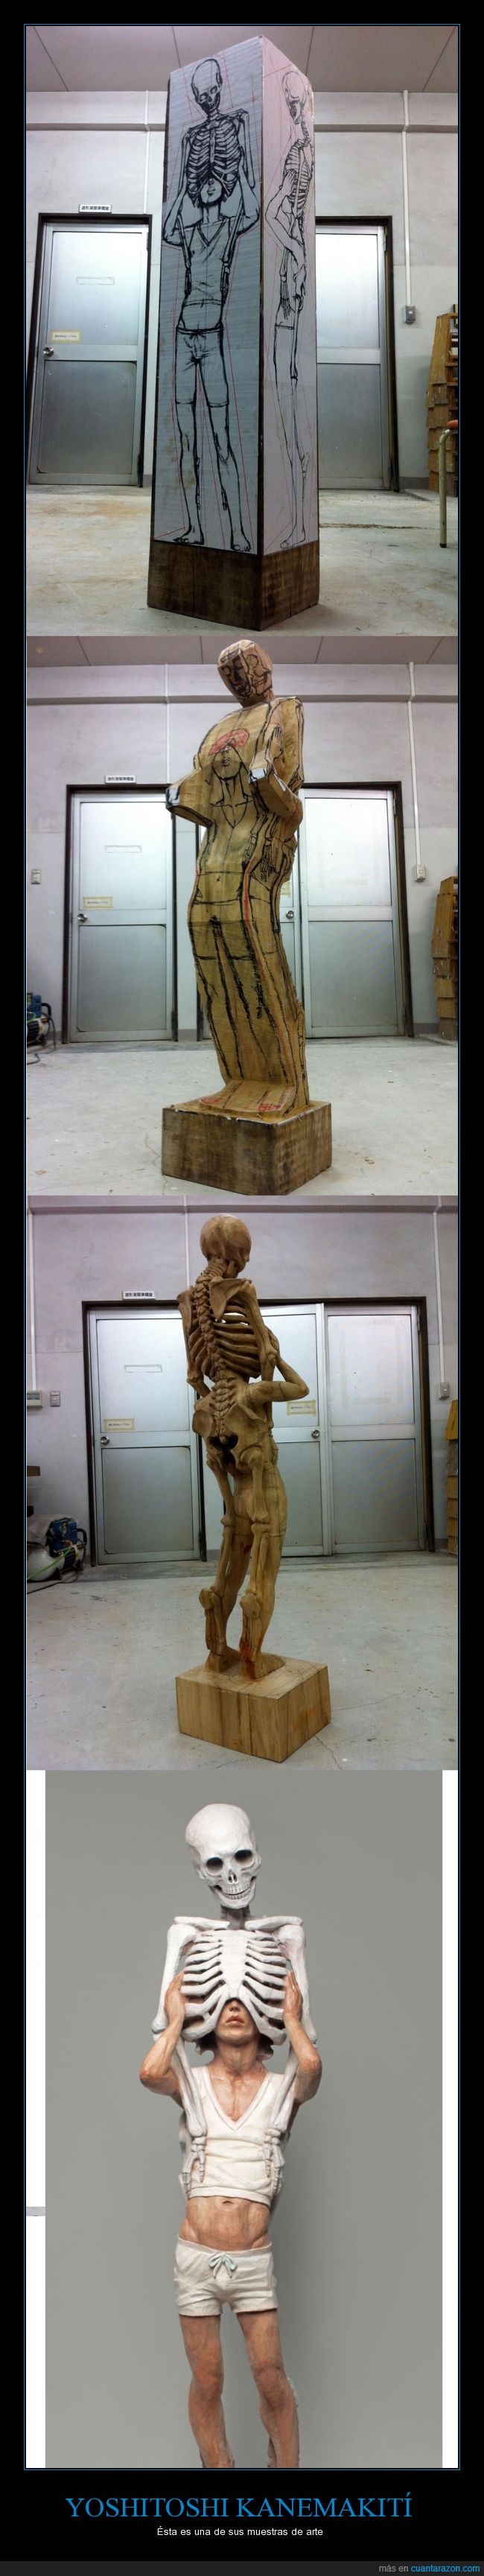 Escultura,Arte,Esqueleto,Cráneo,madera,tallar,muerte,vida,Yoshitoshi Kanemakiti